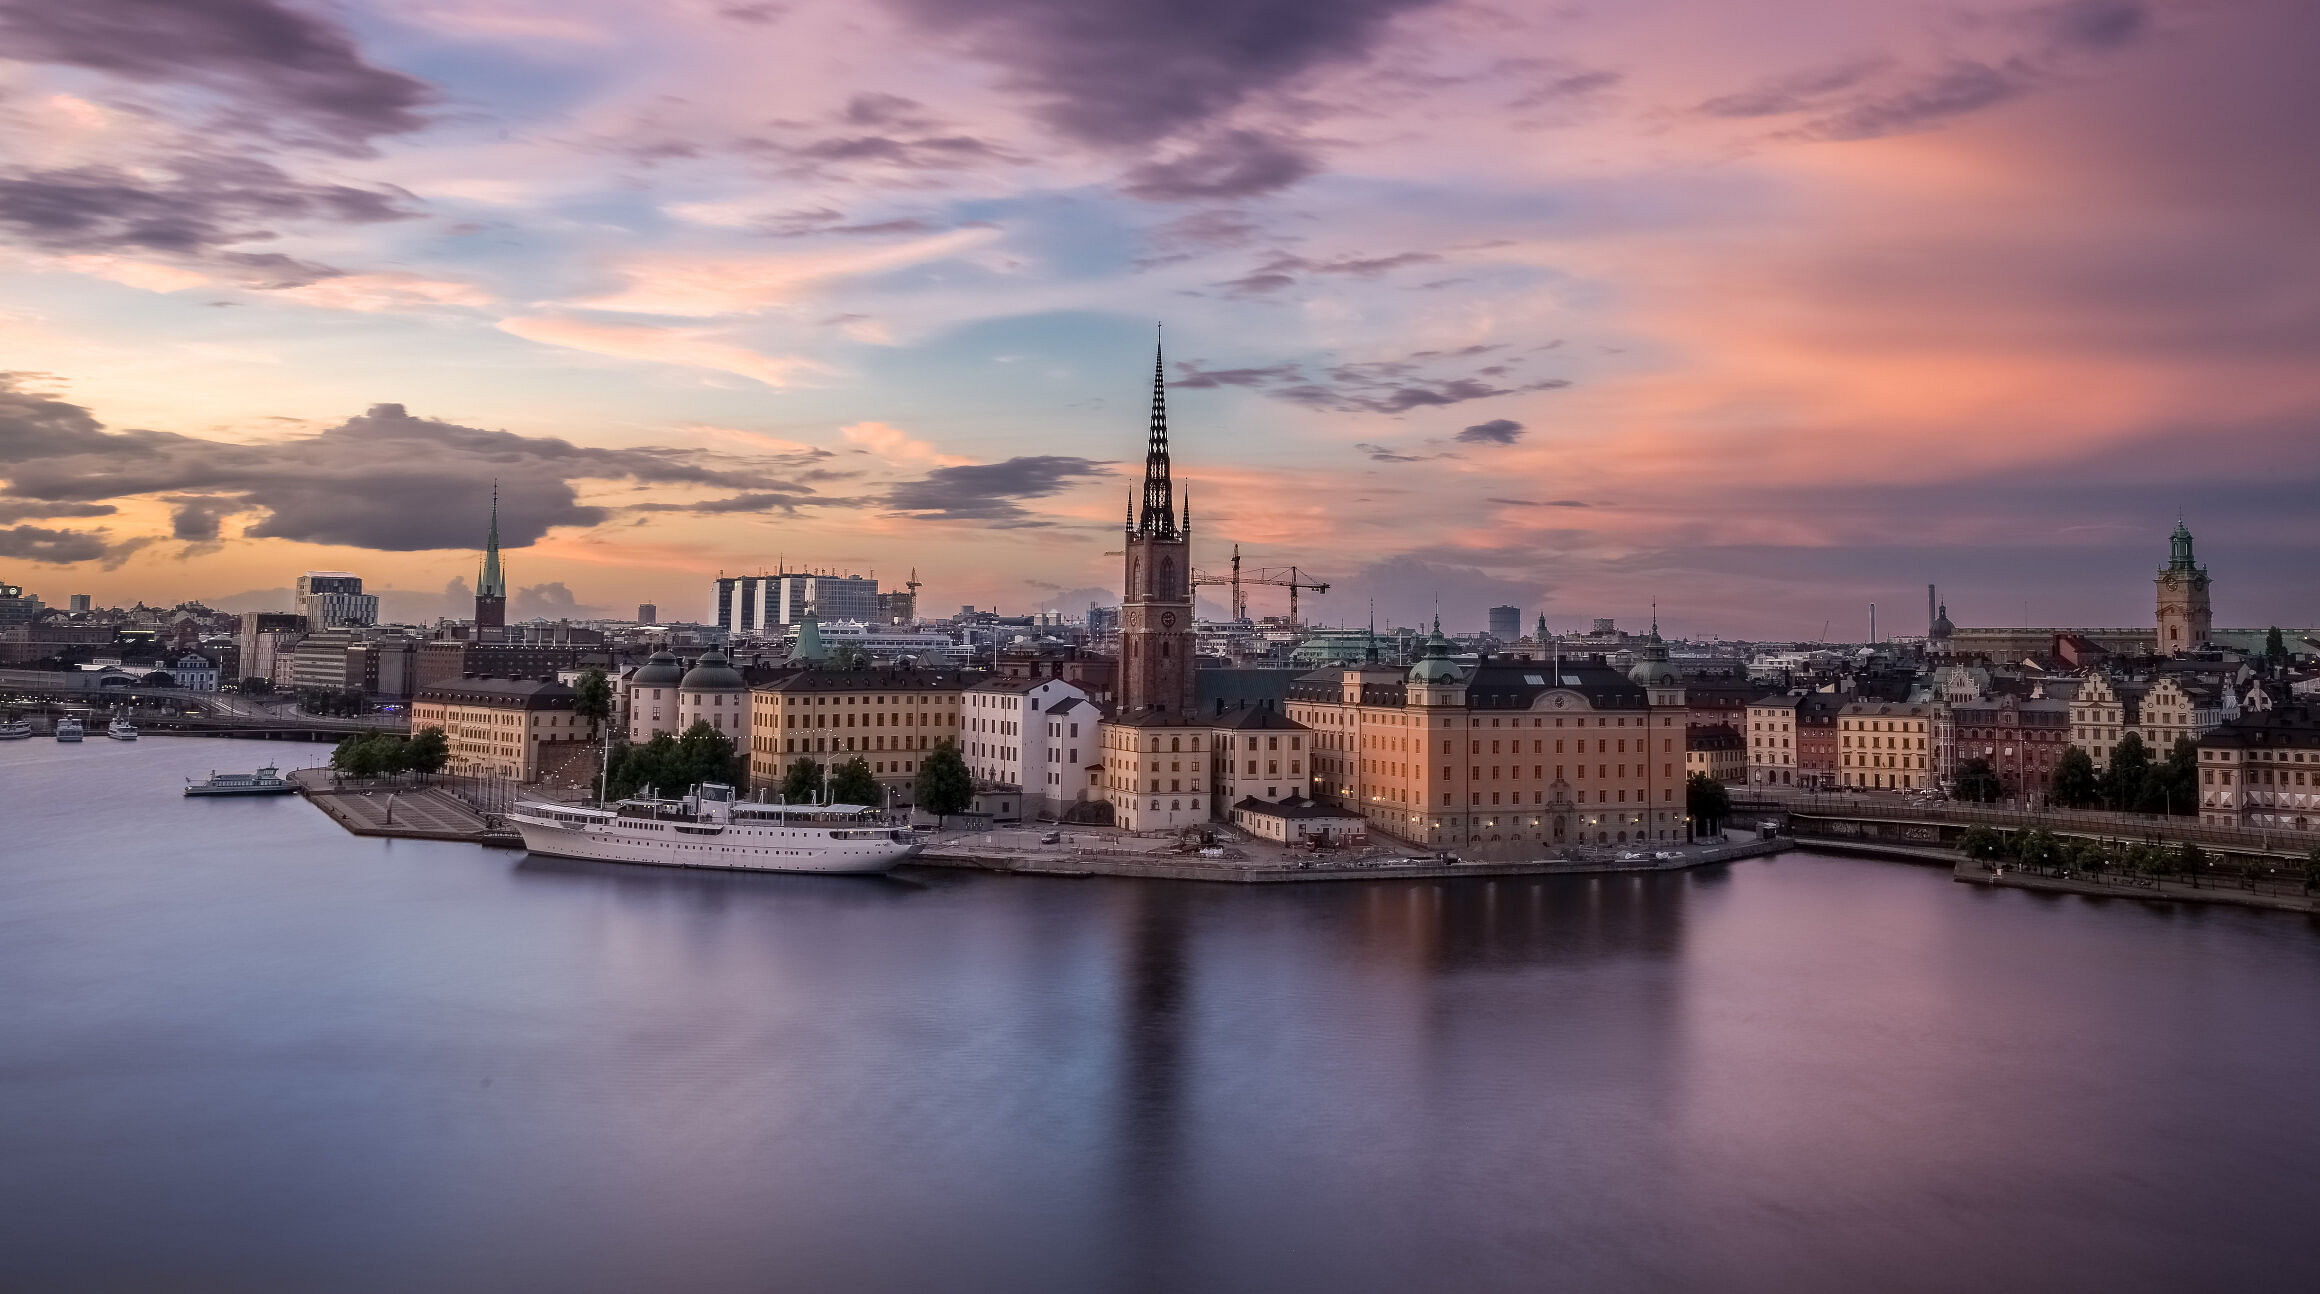 Stockholm Sweden in the evening